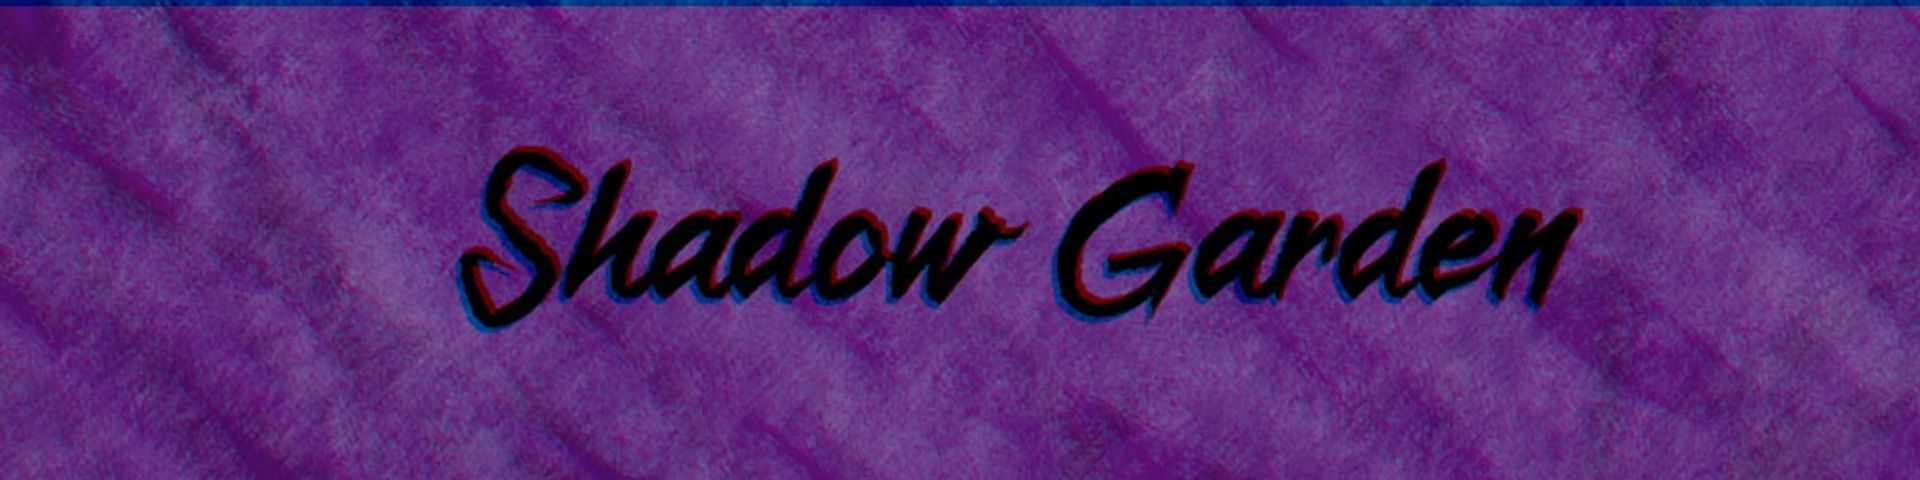 Nome da loja  shadow-garden